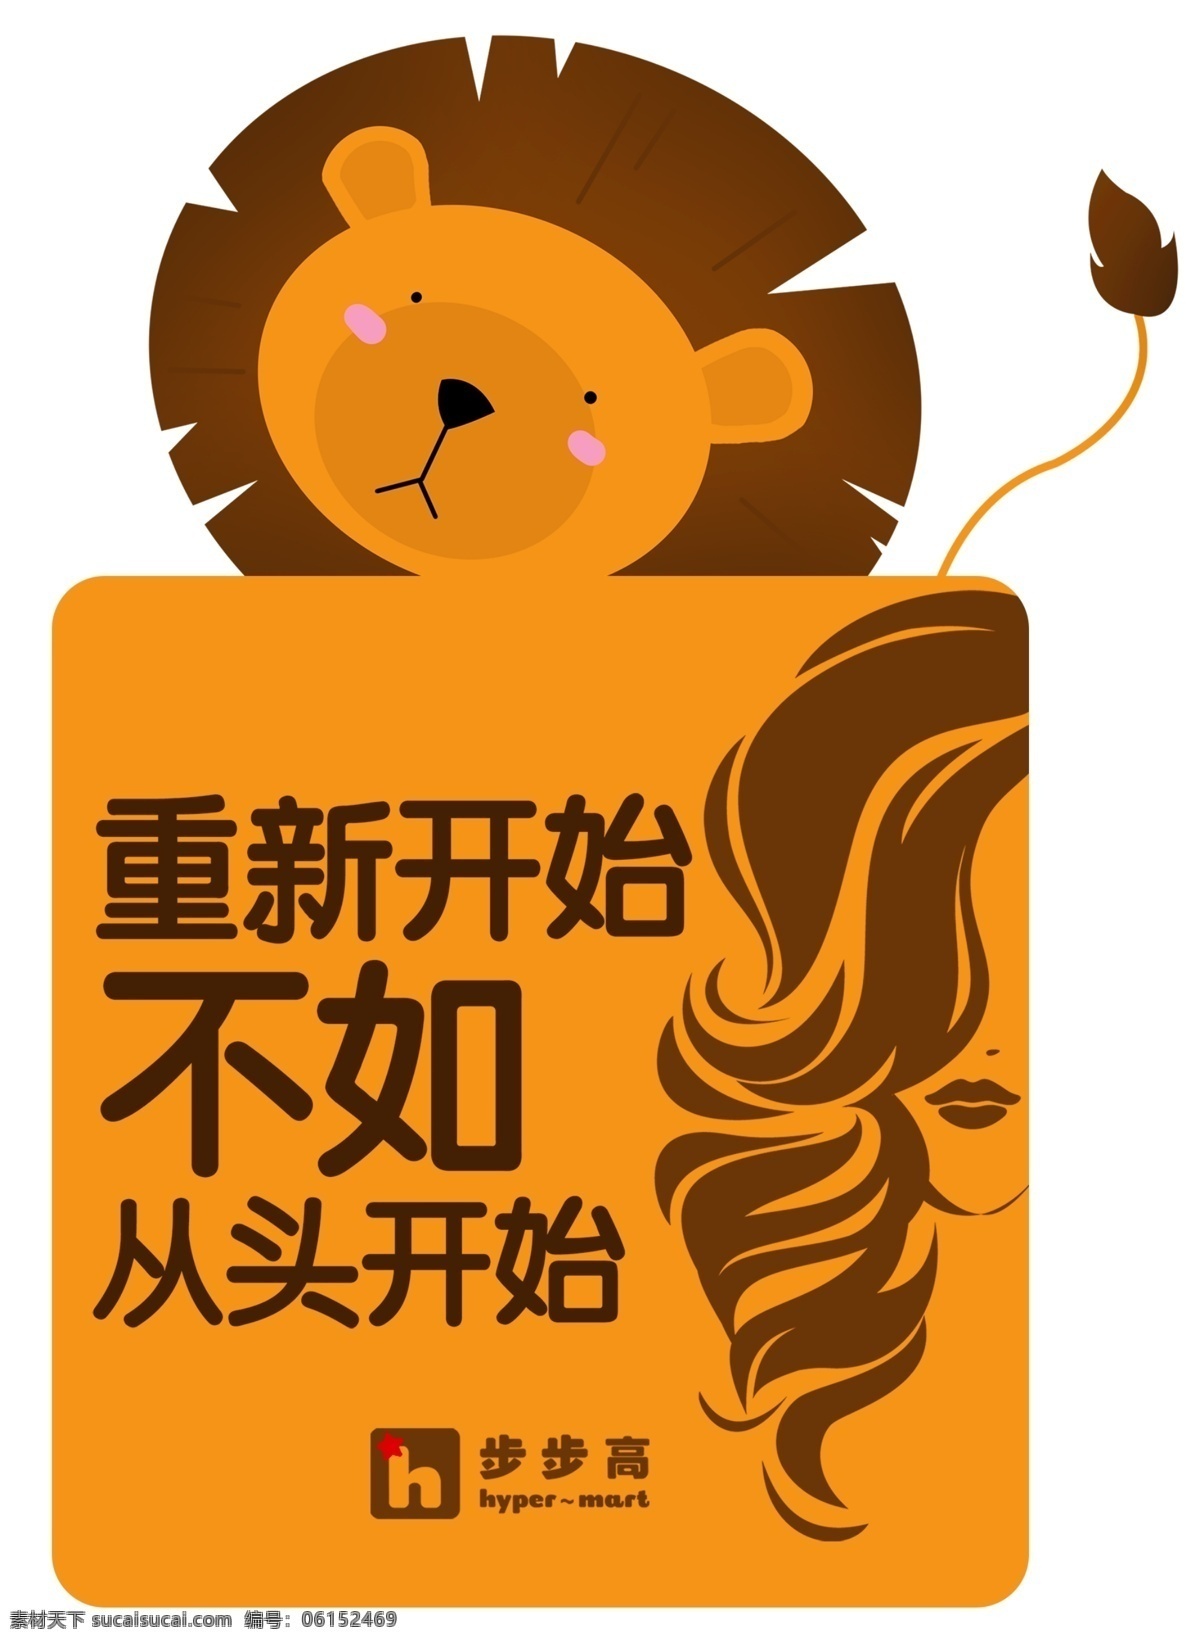 卡通异型贴 卡通 异型贴 洗发水 广告 墙贴狮子